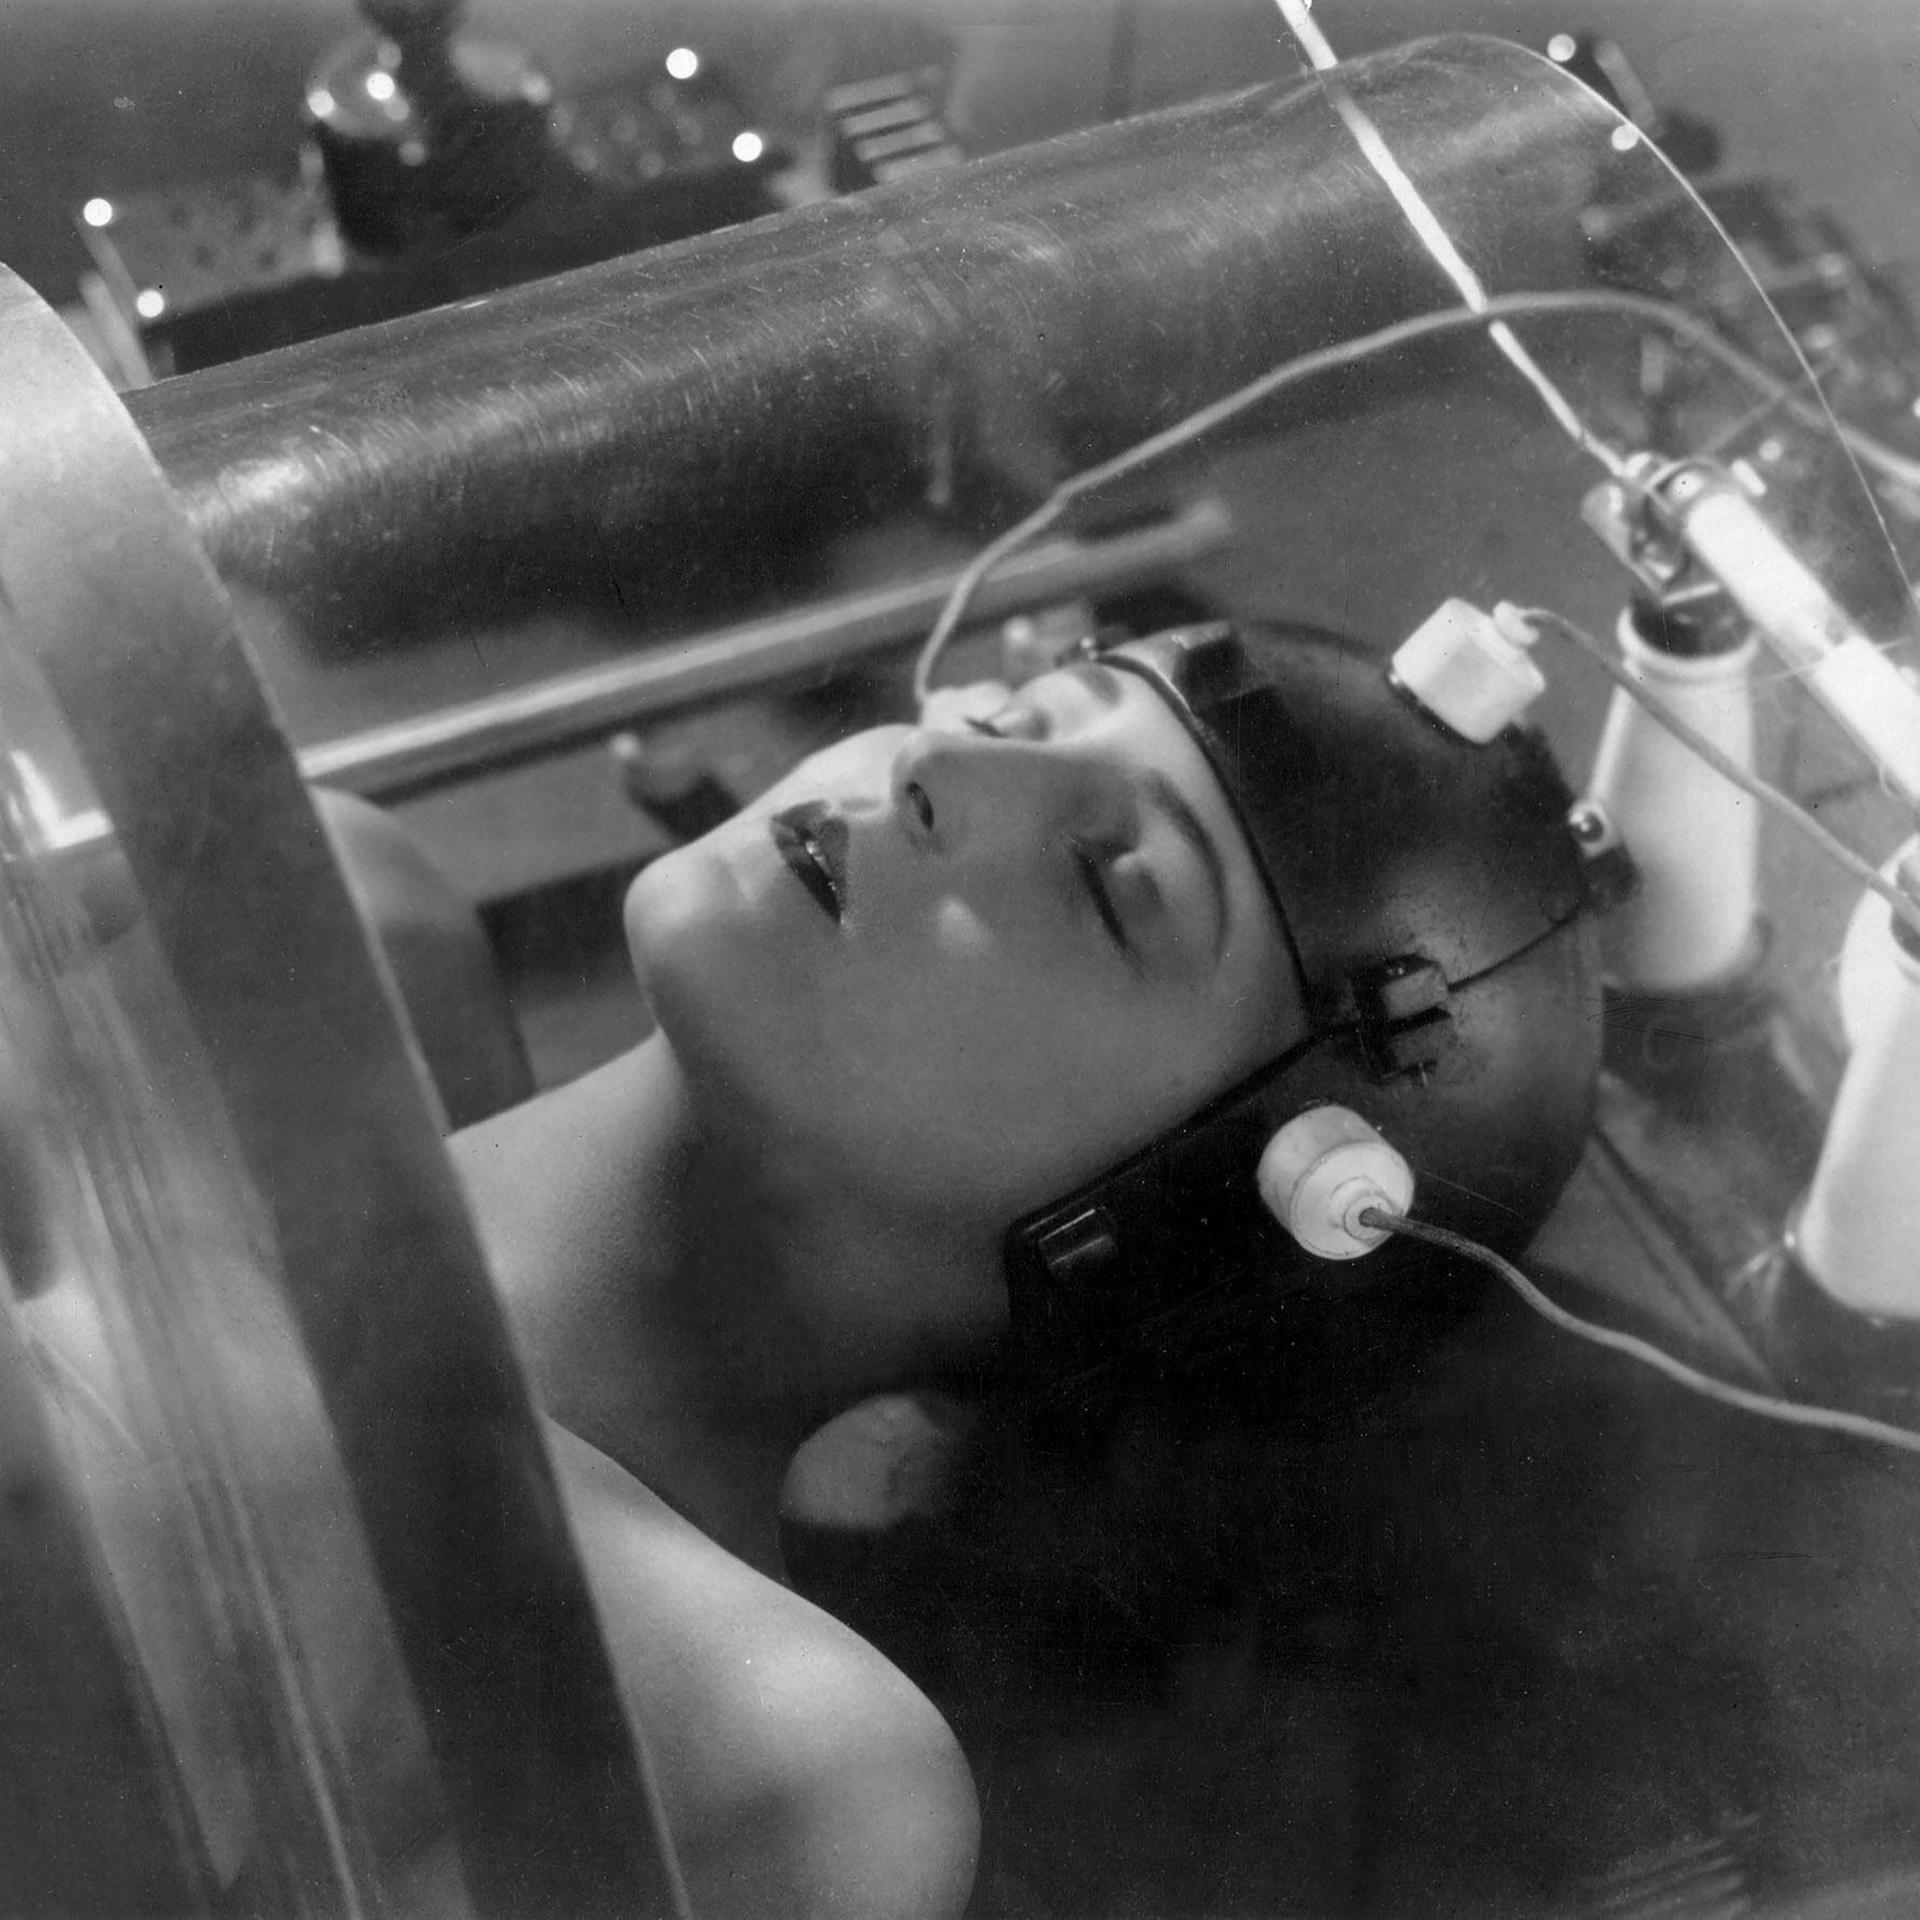 Brigitte Helm als Roboter im Film "Metropolis" aus dem Jahr 1927.